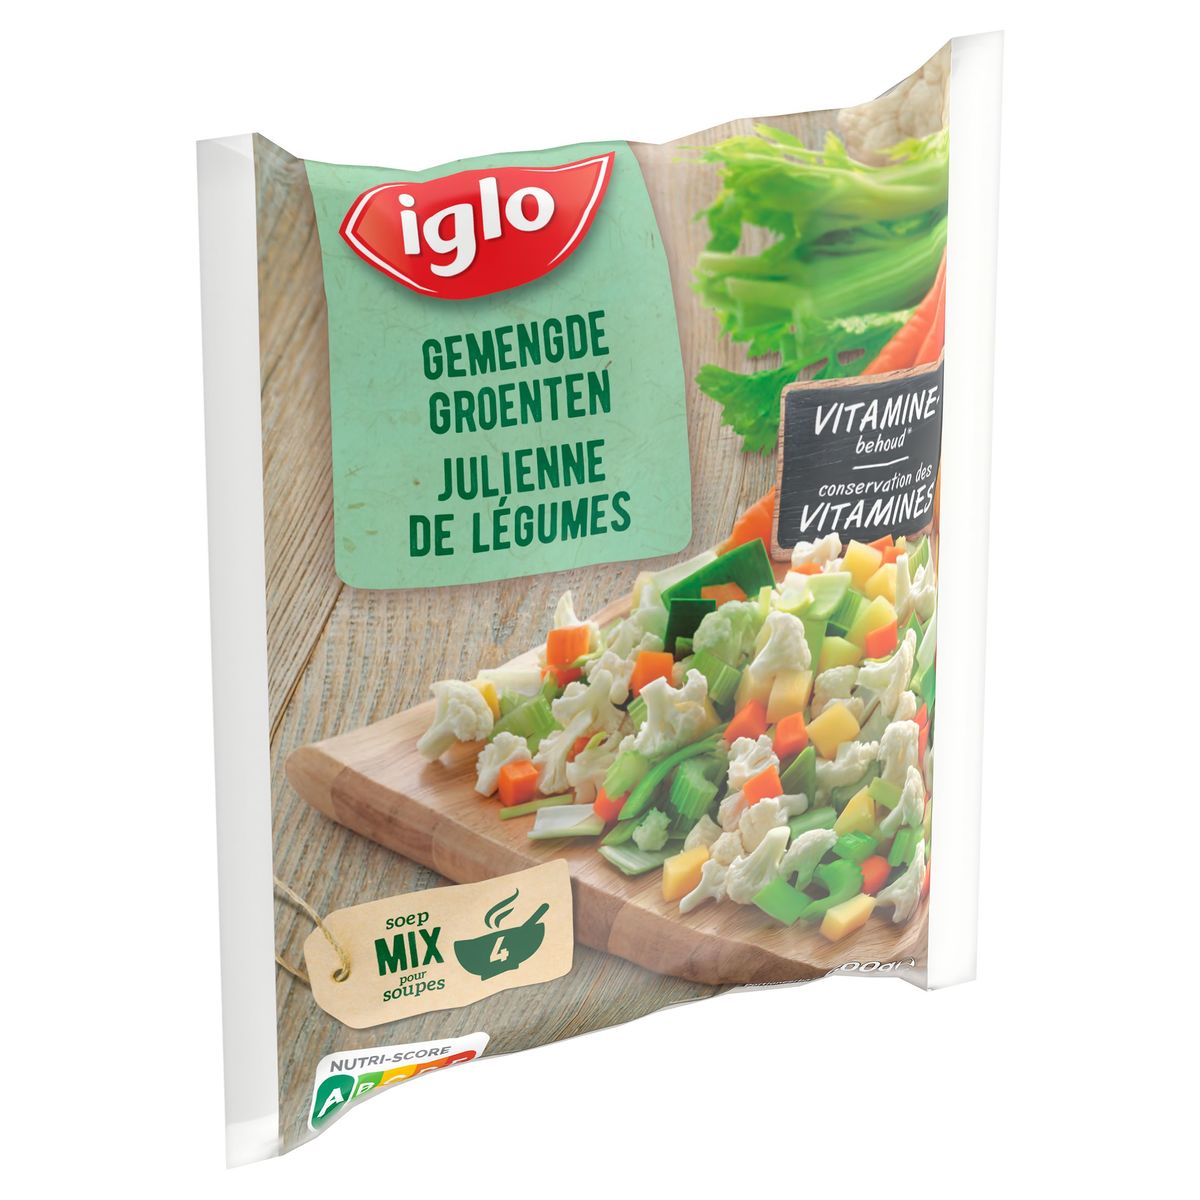 Iglo Julienne de Légumes 600 g